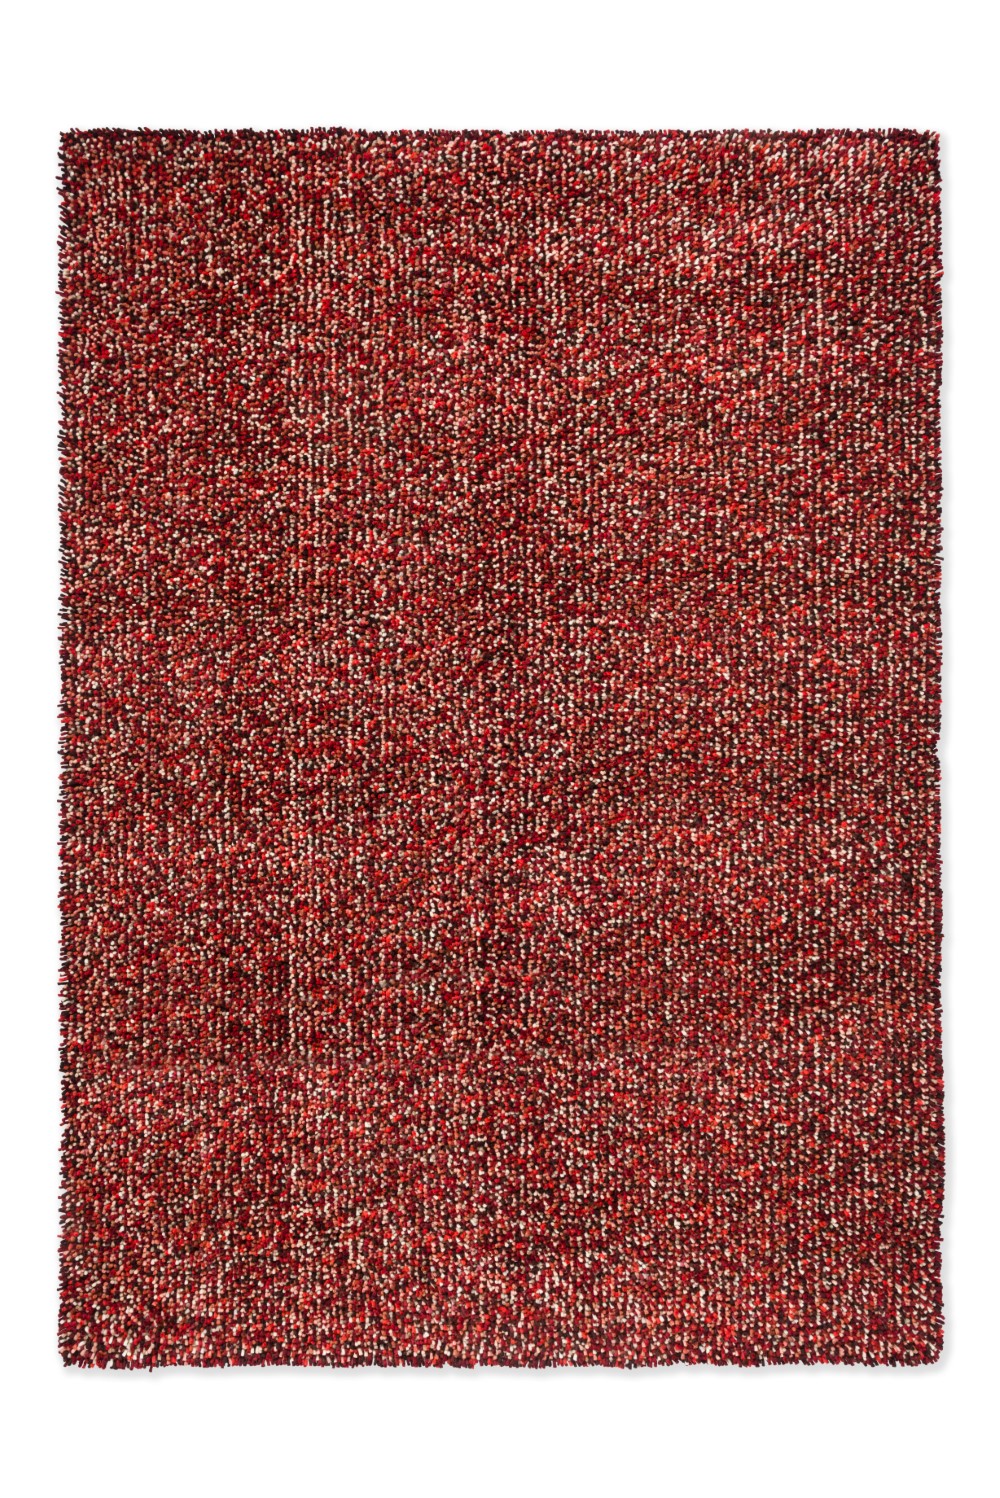 brink-campman-rug-pop-art-red-066900